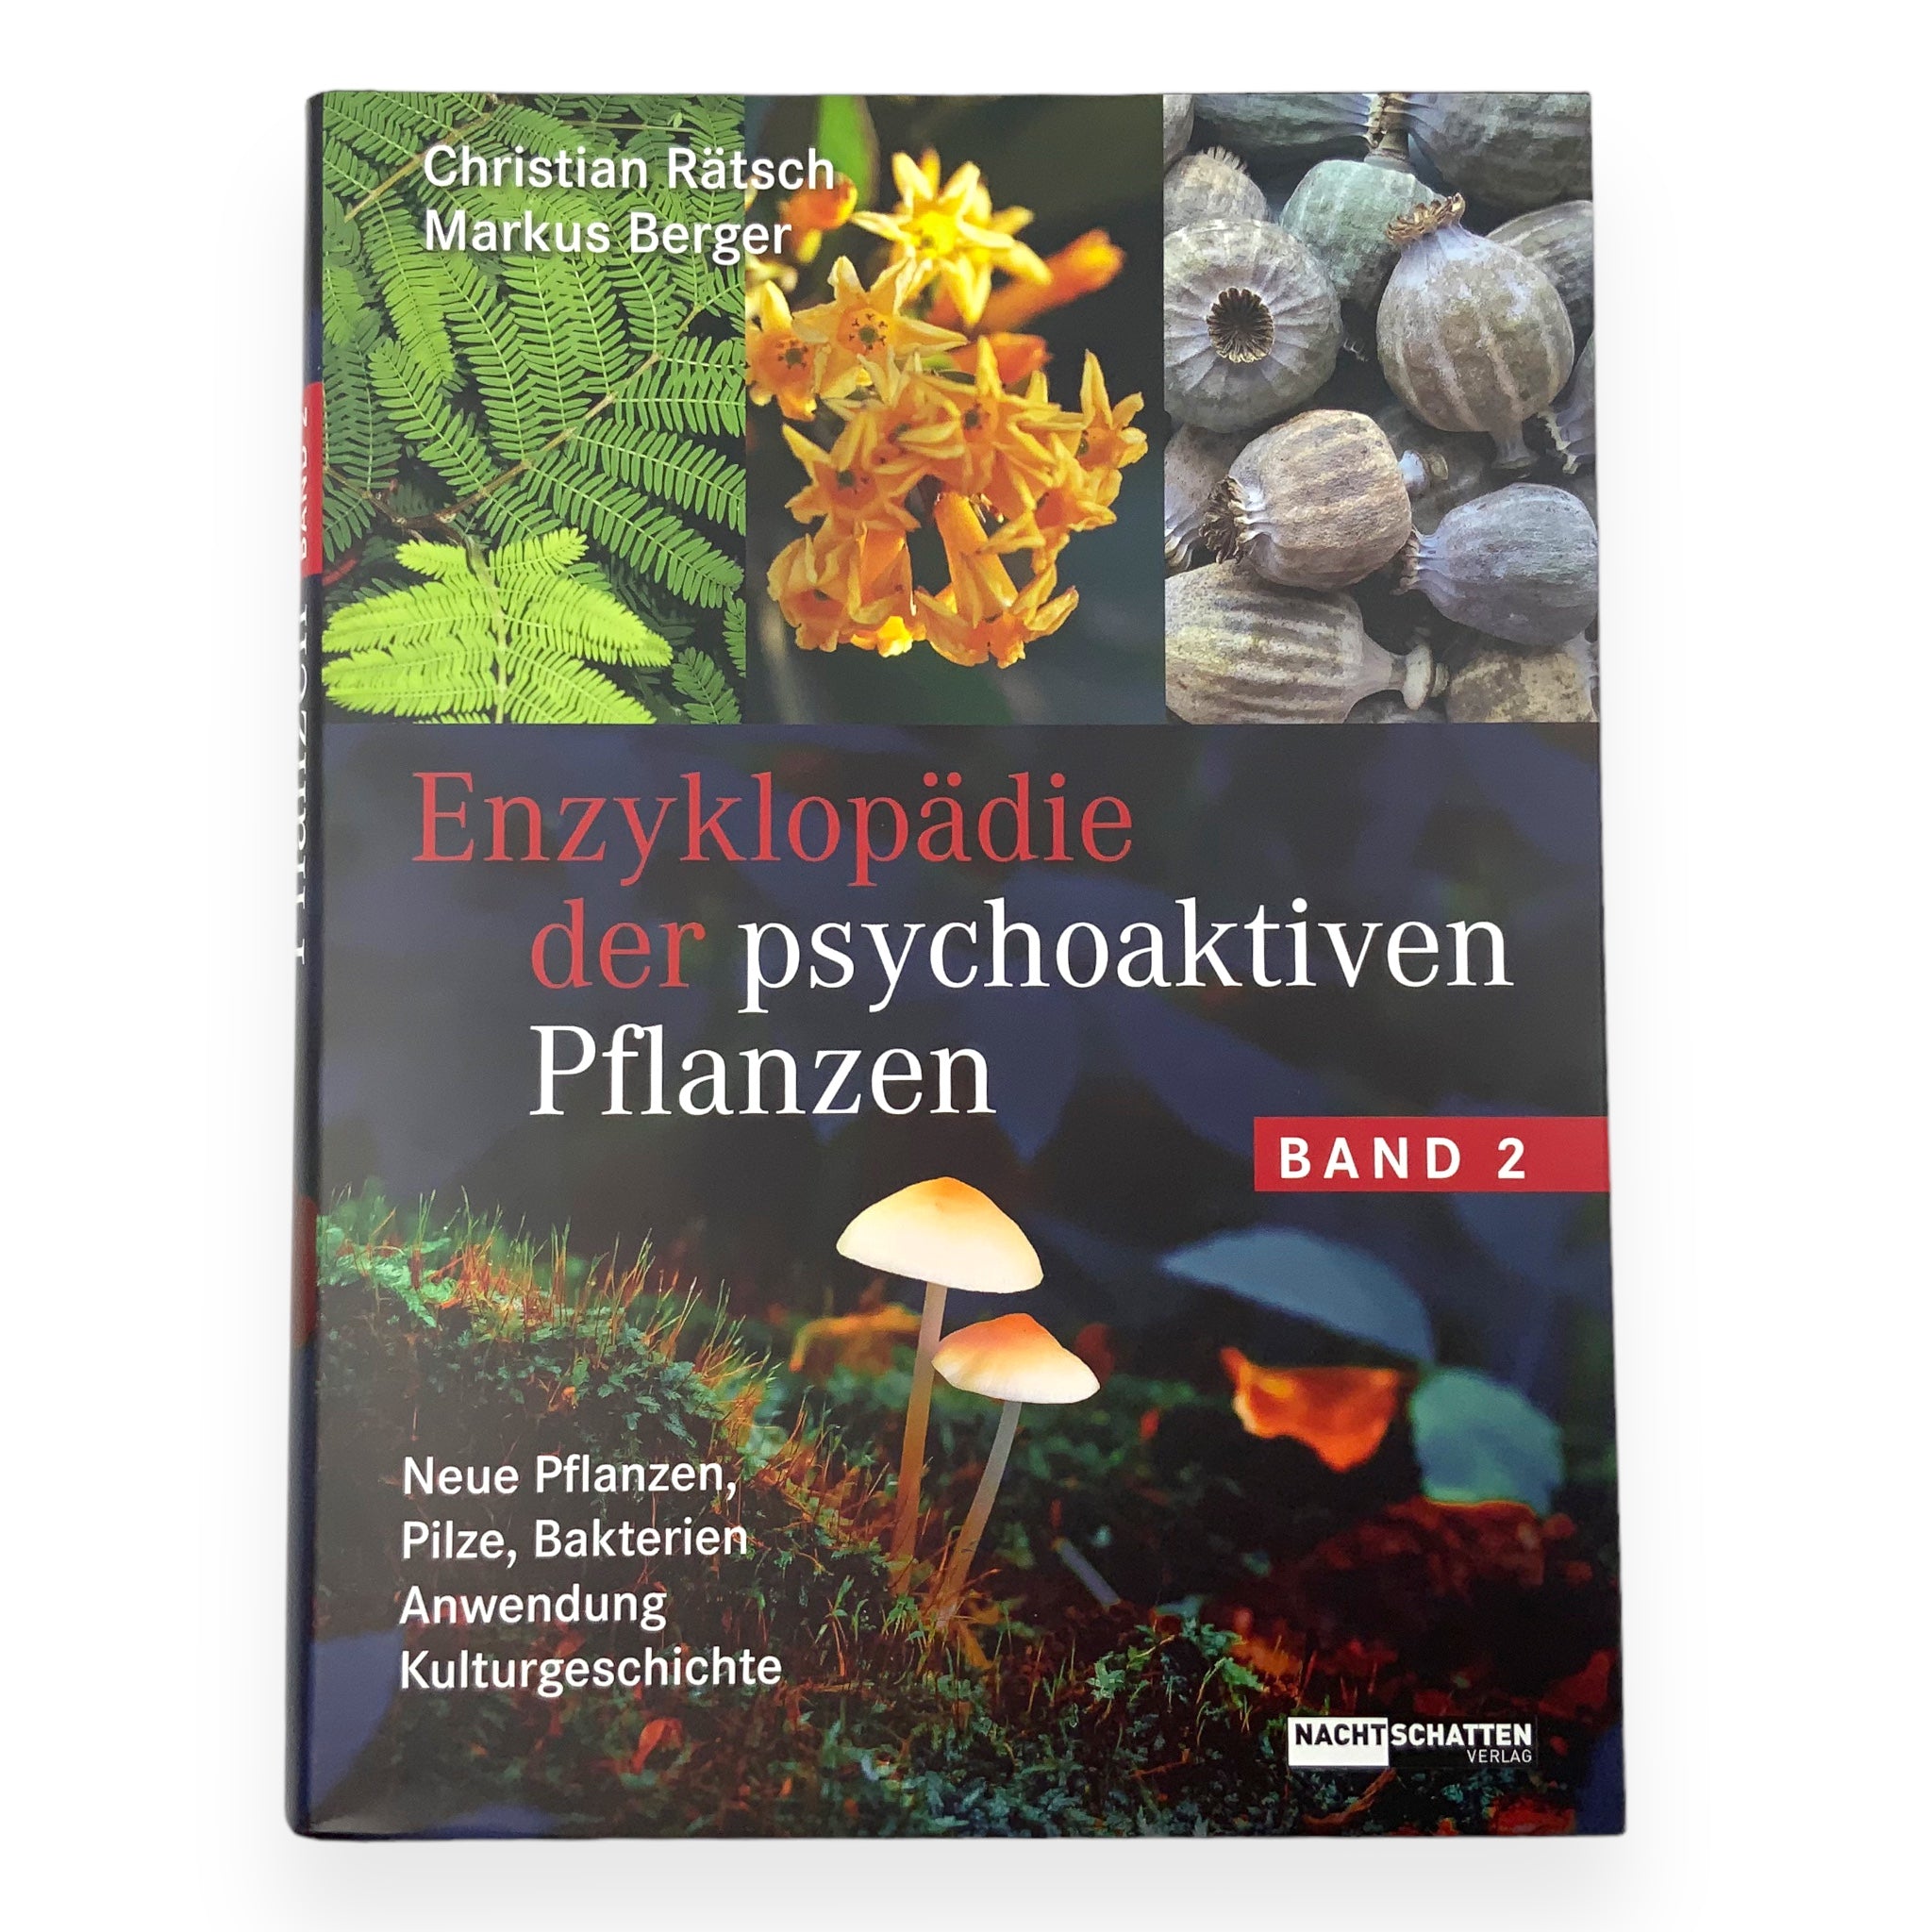 Enzyklopädie der psychoaktiven Pflanzen Band 2 - Vorderseite